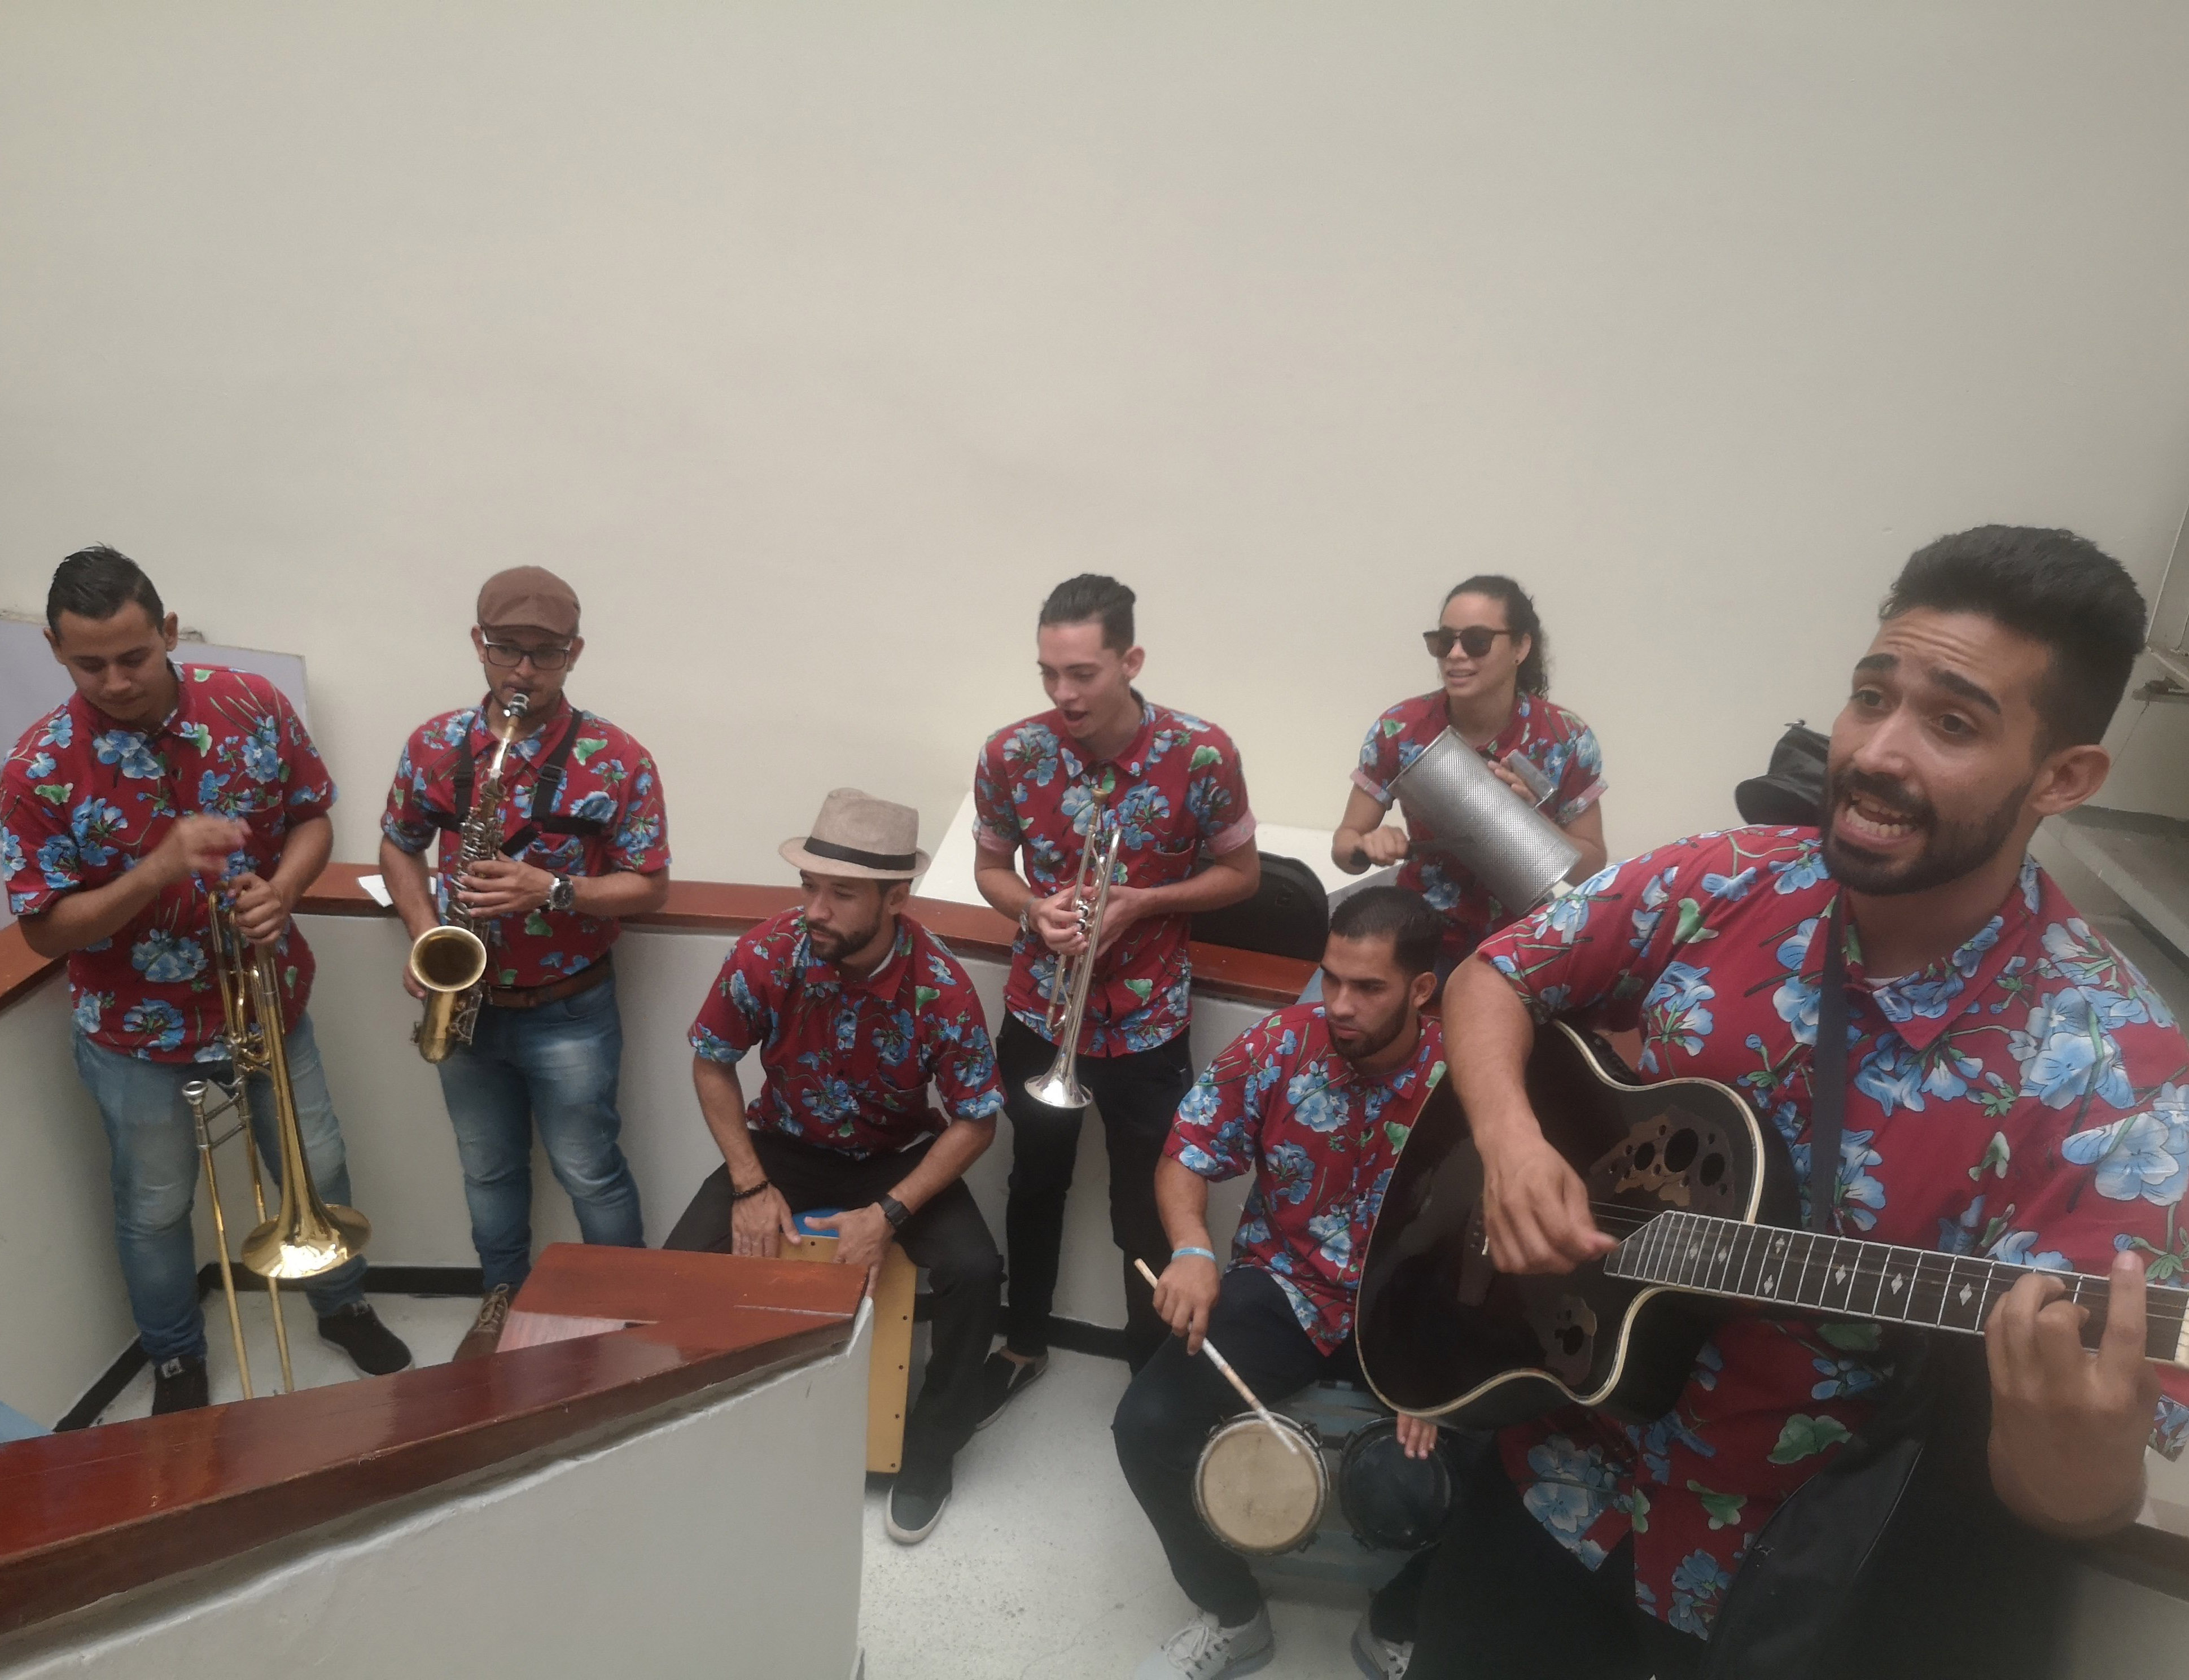 Los músicos venezolanos trabajan en las calles